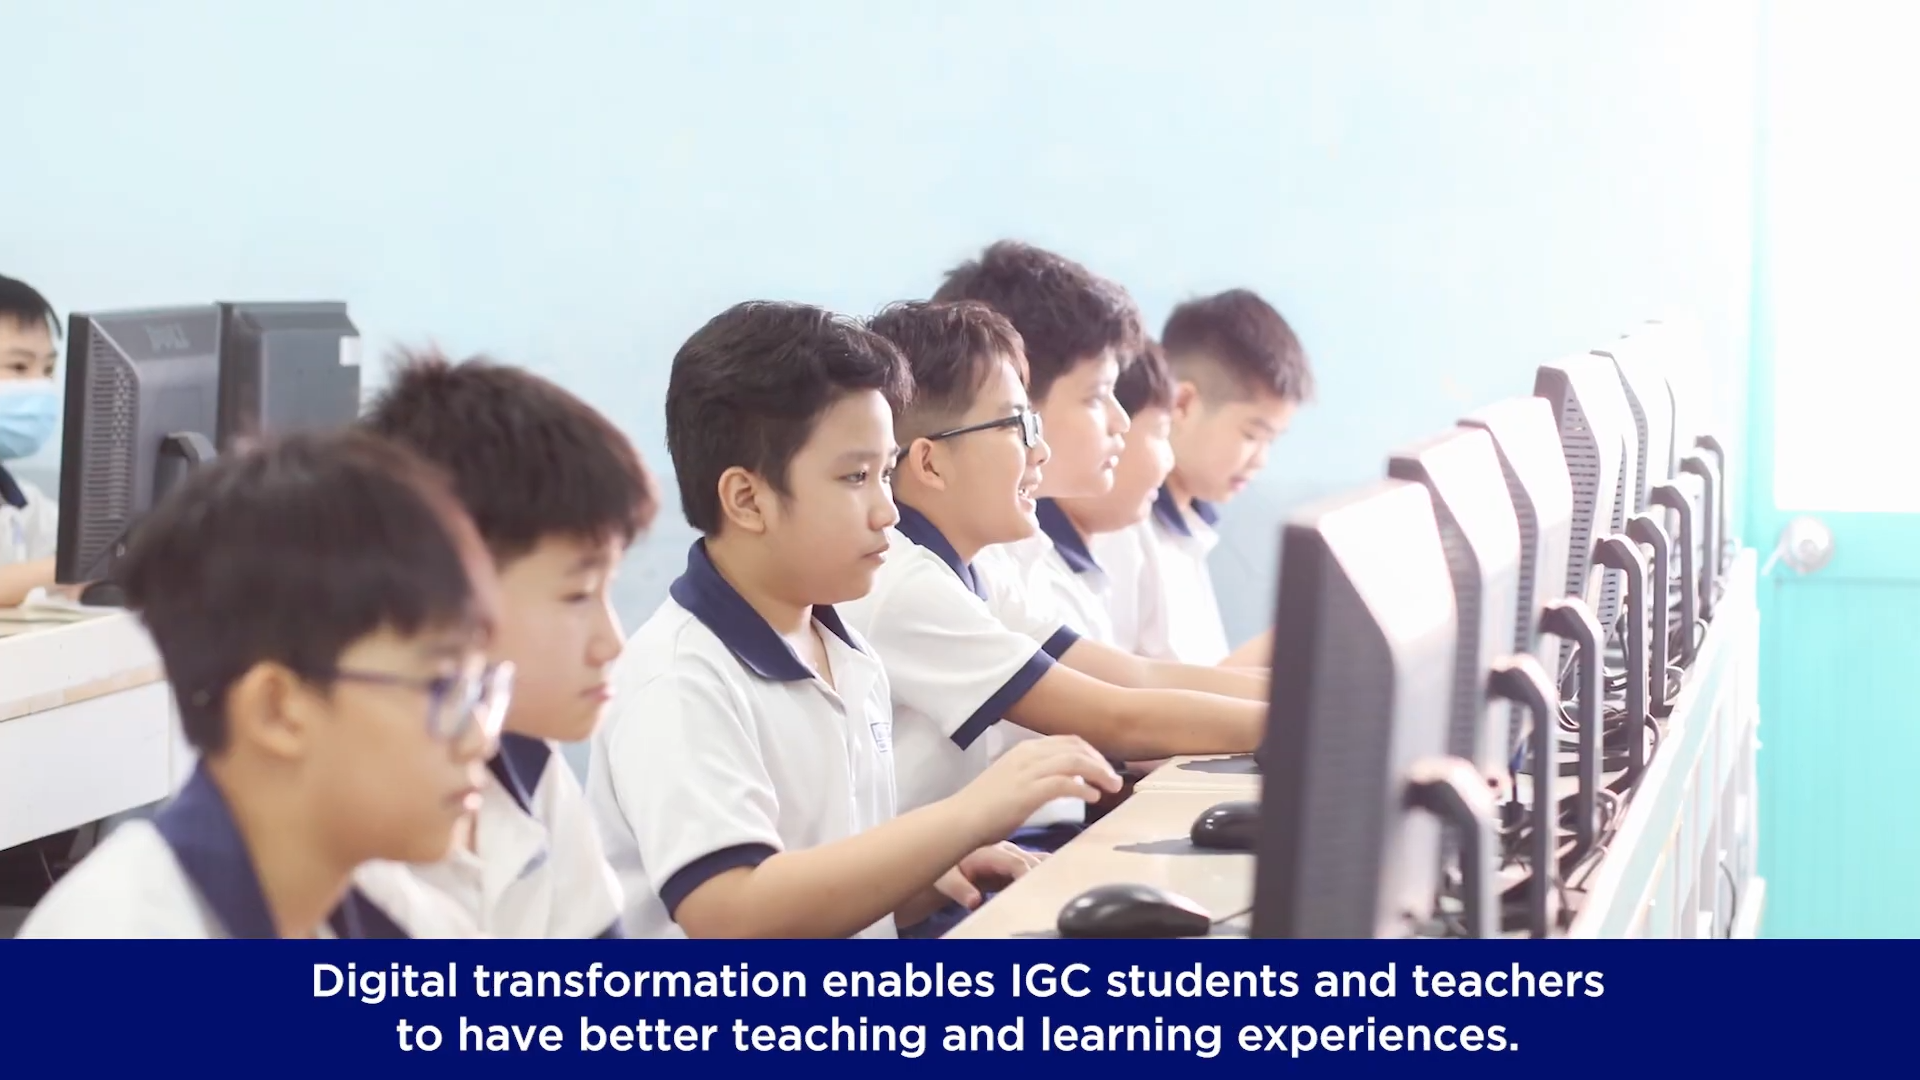 Giới thiệu Tập đoàn Giáo dục IGC